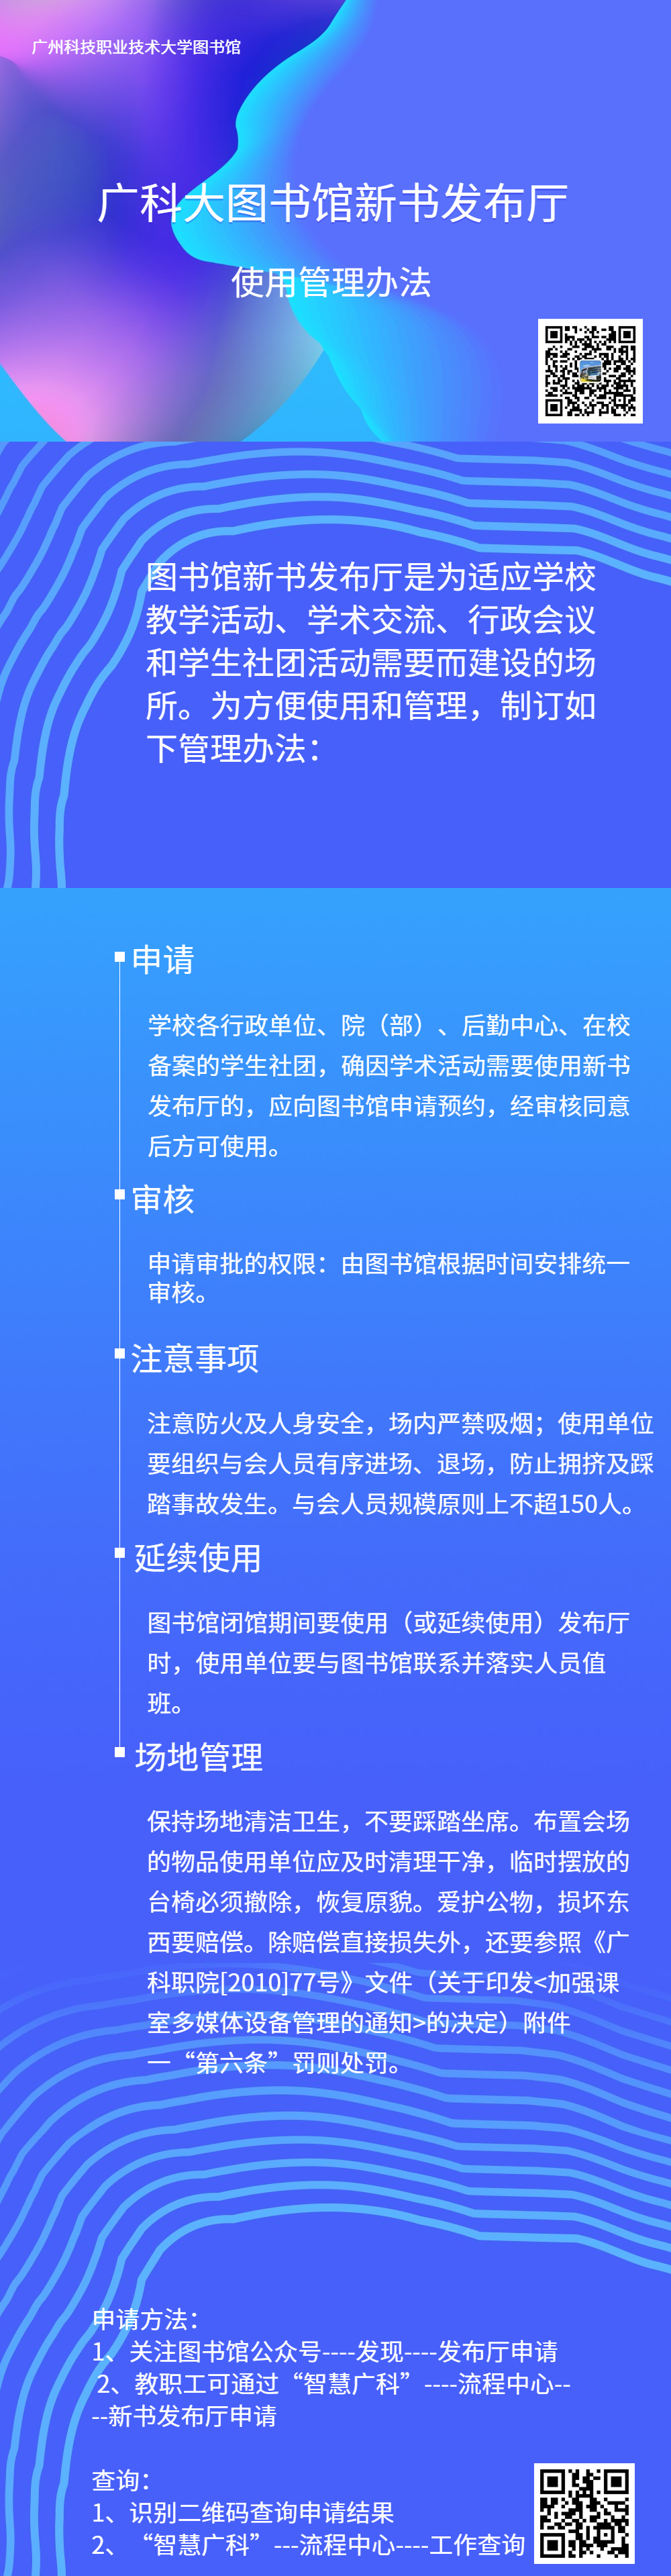 企业周报每日纪要文章长图 (3).png